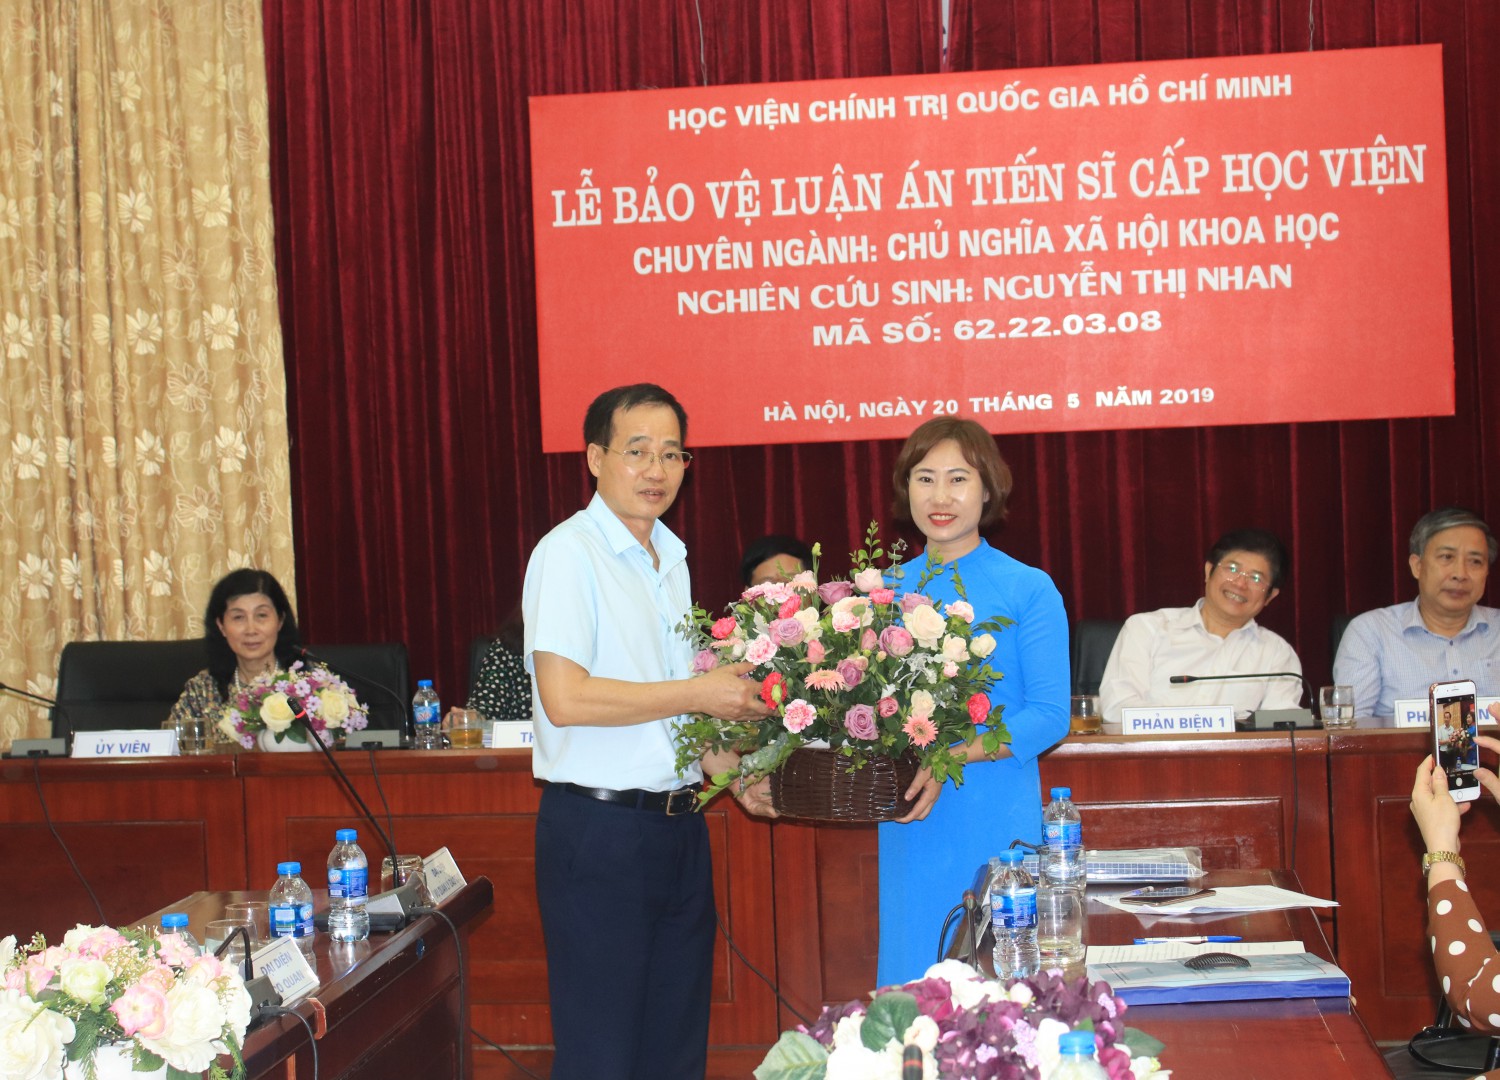 Nghiên cứu sinh Nguyễn Thị Nhan bảo vệ thành công  luận án tiến sĩ chuyên ngành Chủ nghĩa xã hội khoa học